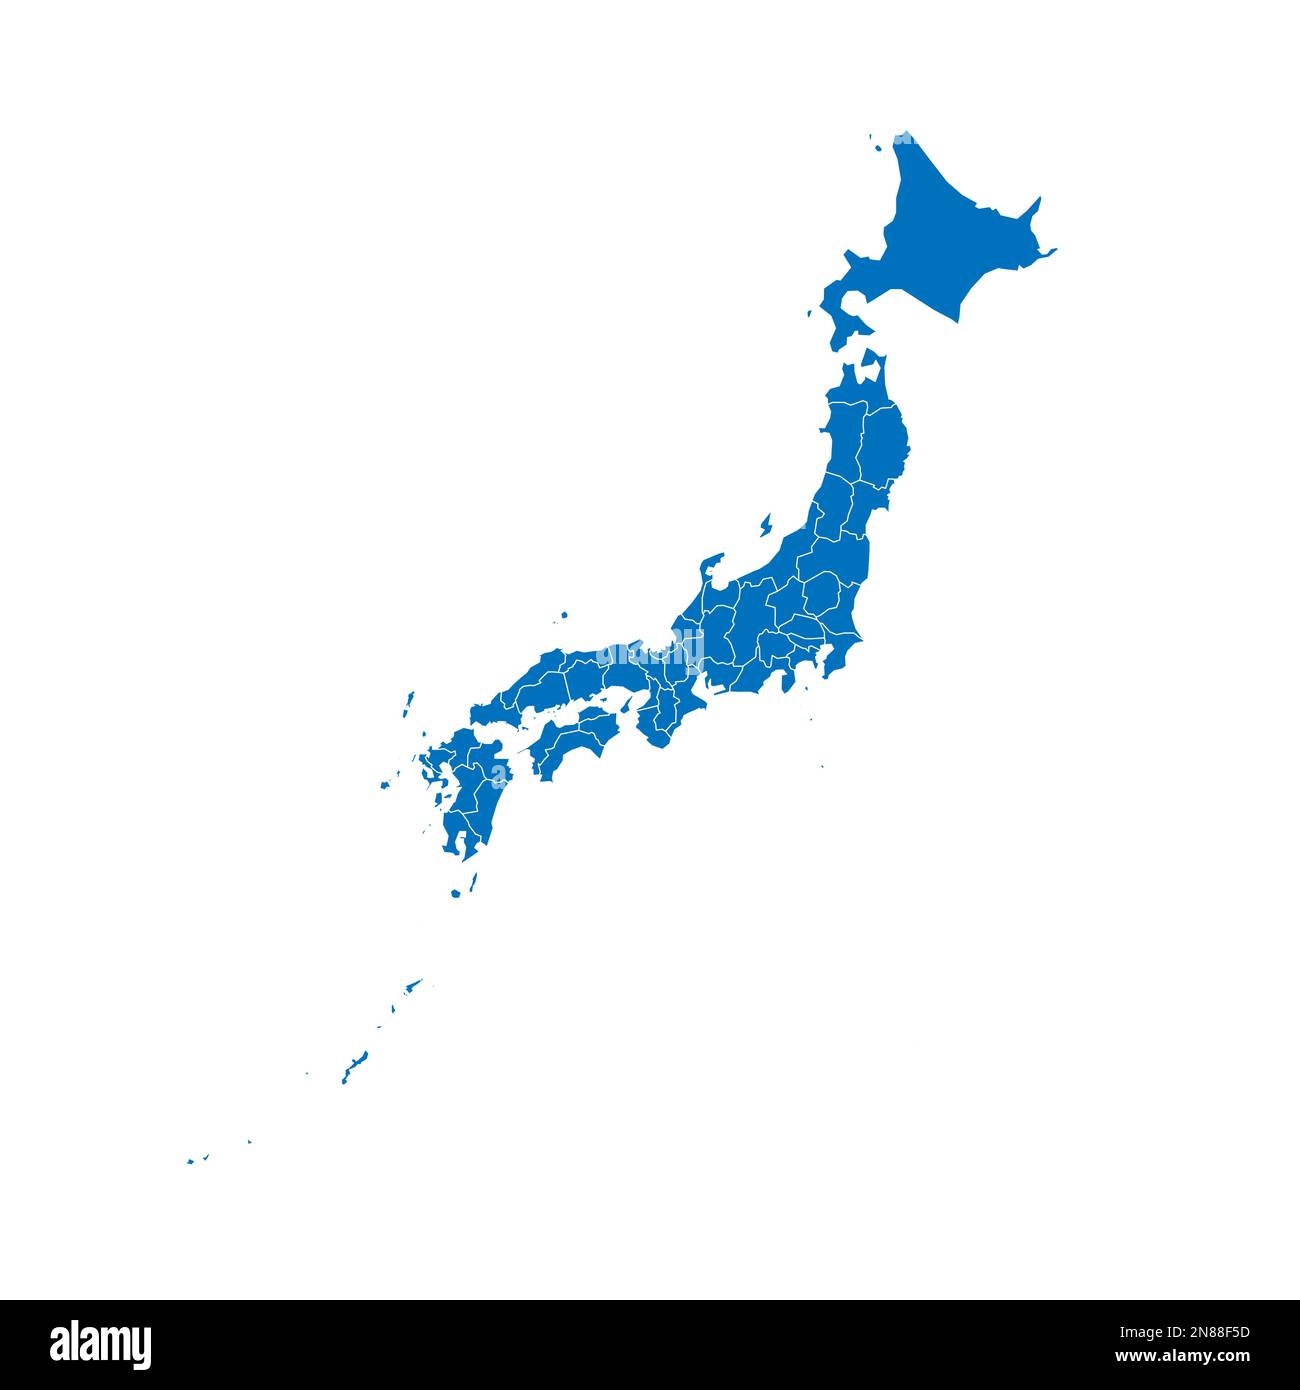 Politische Karte der Verwaltungseinheiten Japans - Präfekturen, Metropilis Tokio, Territorium Hokaido und städtische Präfekturen Kyoto und Osaka. Blau leuchtende leere Vektorkarte mit weißen Rändern. Stock Vektor